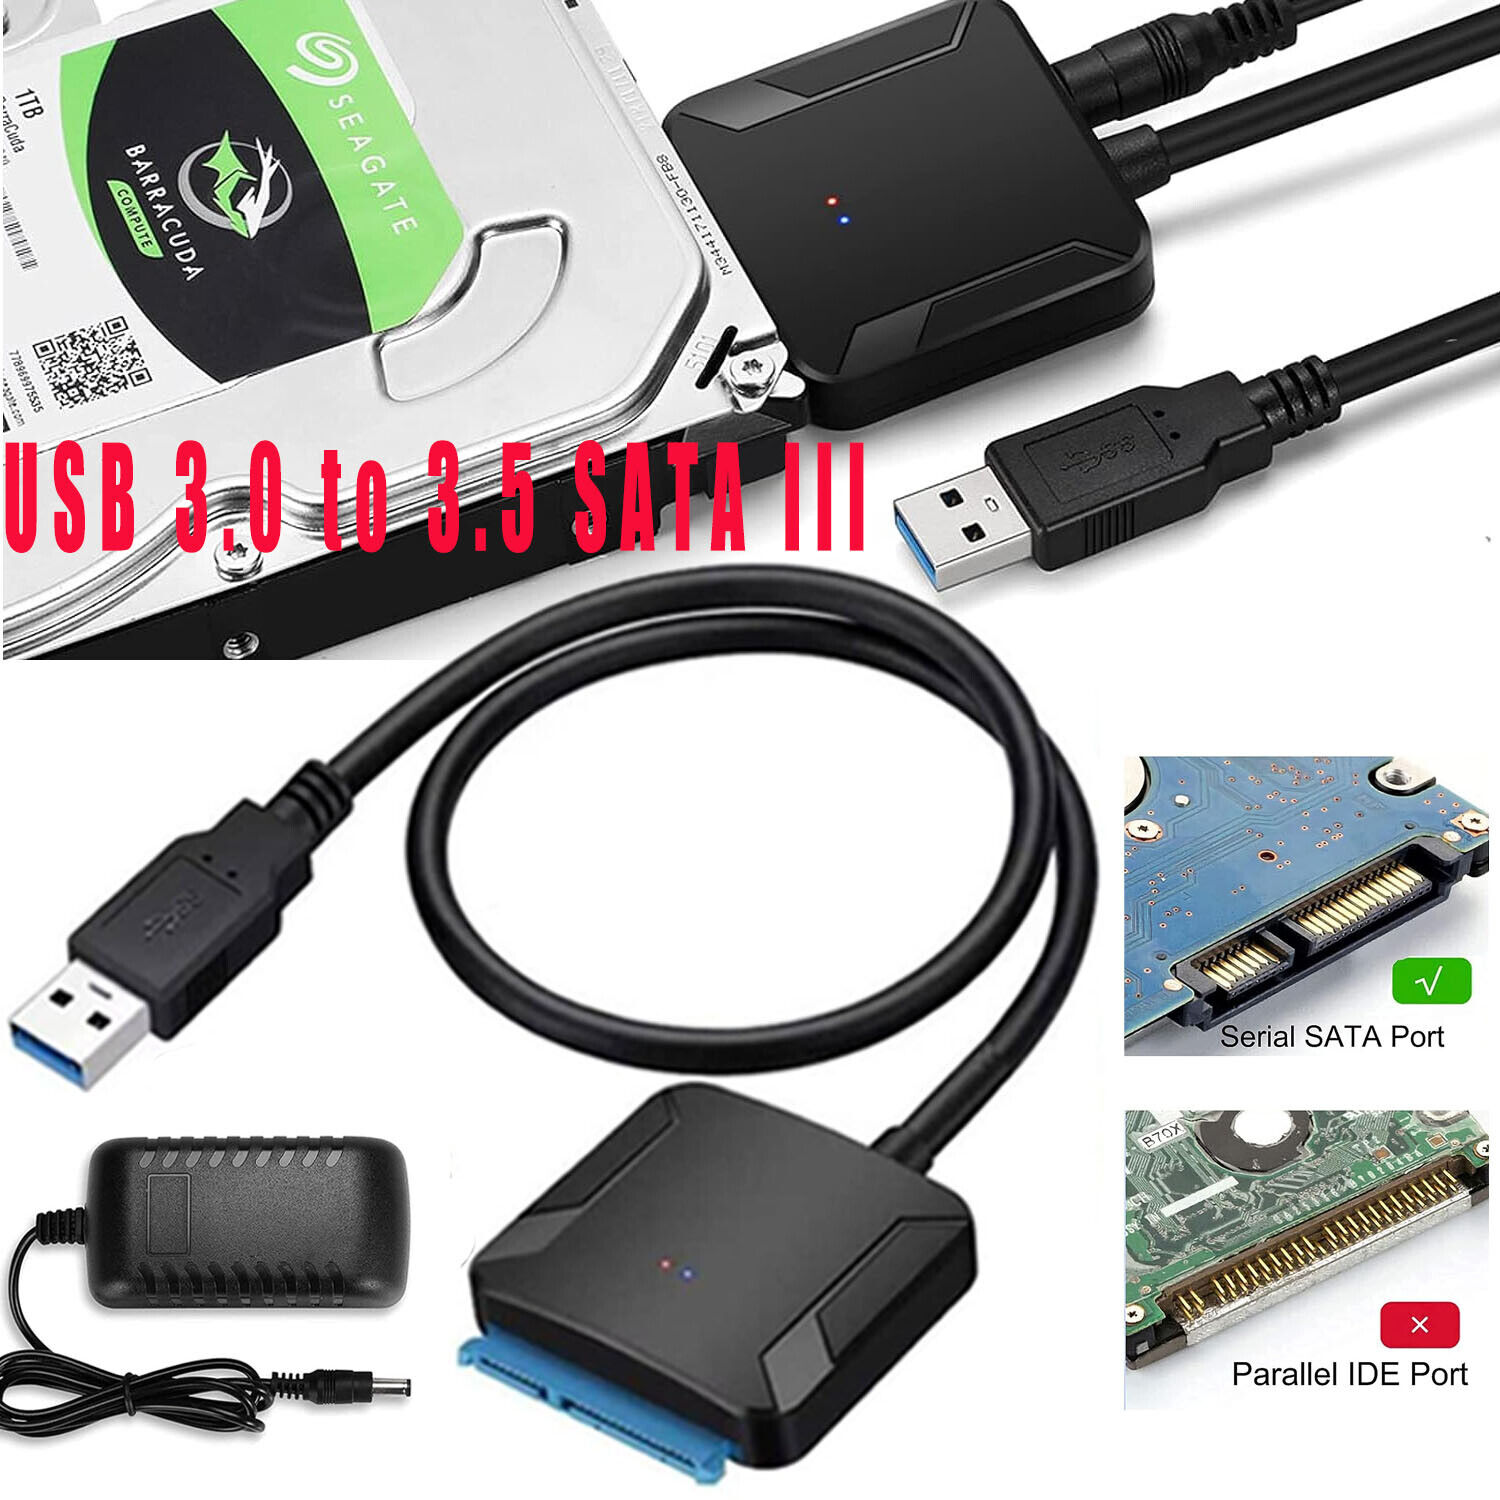 USB 3.0 to SATA III External Hard Drive Reader 2.5 \